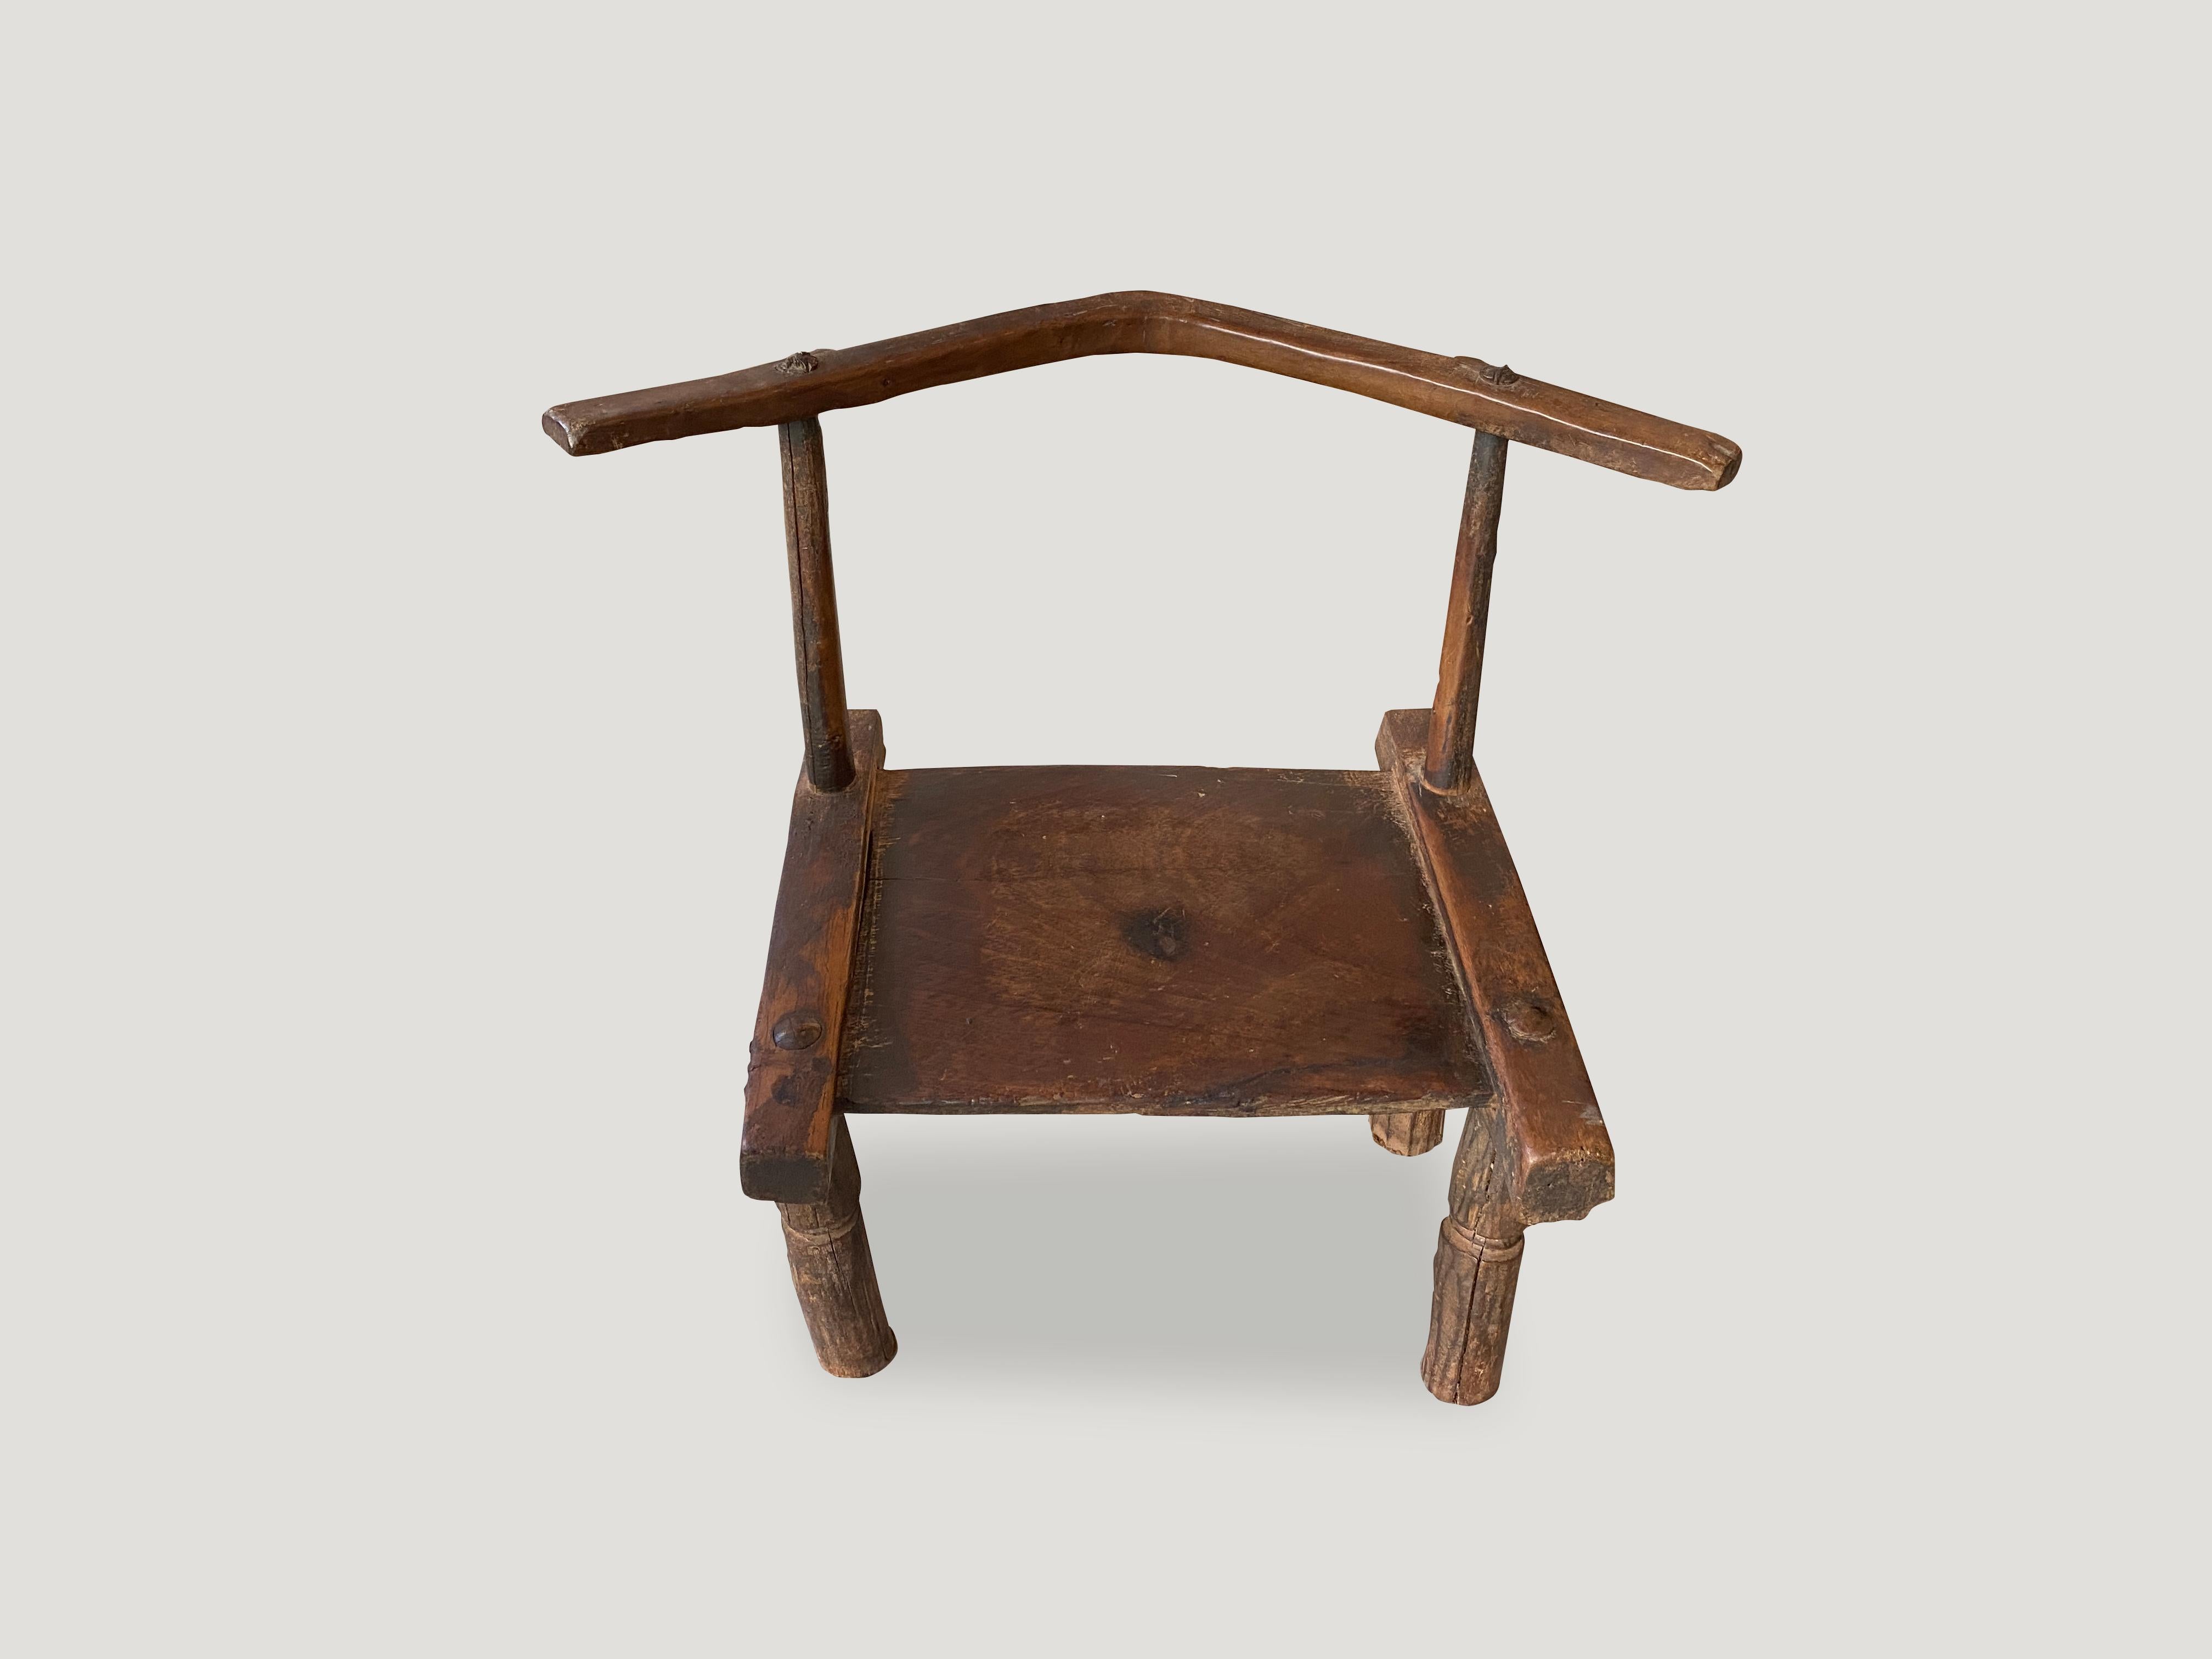 Schöne Patina auf diesem handgeschnitzten Holzstuhl aus der Elfenbeinküste Afrikas aus dem 19. Jahrhundert. Er kann auch als niedriger Beistelltisch verwendet werden. Ein Kunstwerk.

Dieser Stuhl wurde im Geiste von Wabi-Sabi entworfen, einer